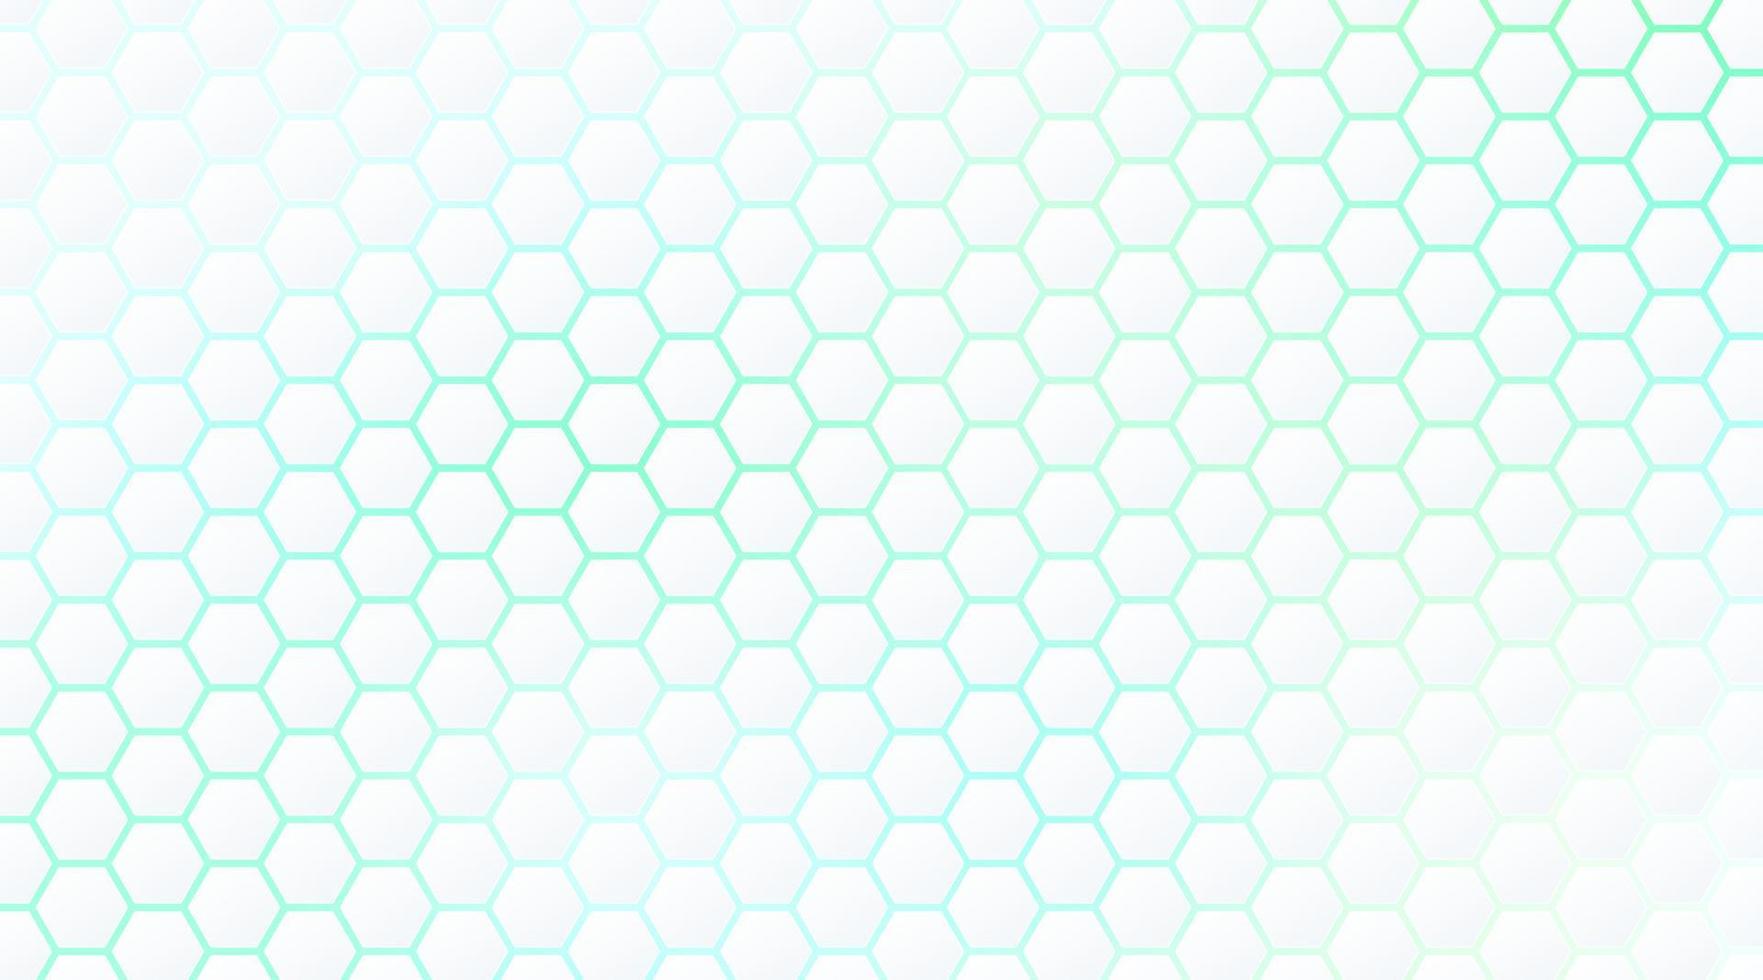 patrón de hexágono blanco abstracto en estilo de tecnología de fondo de luz de neón verde y azul. diseño de banner web de formas geométricas futuristas modernas. puede usar para plantilla de portada, póster, volante, anuncio impreso. vector